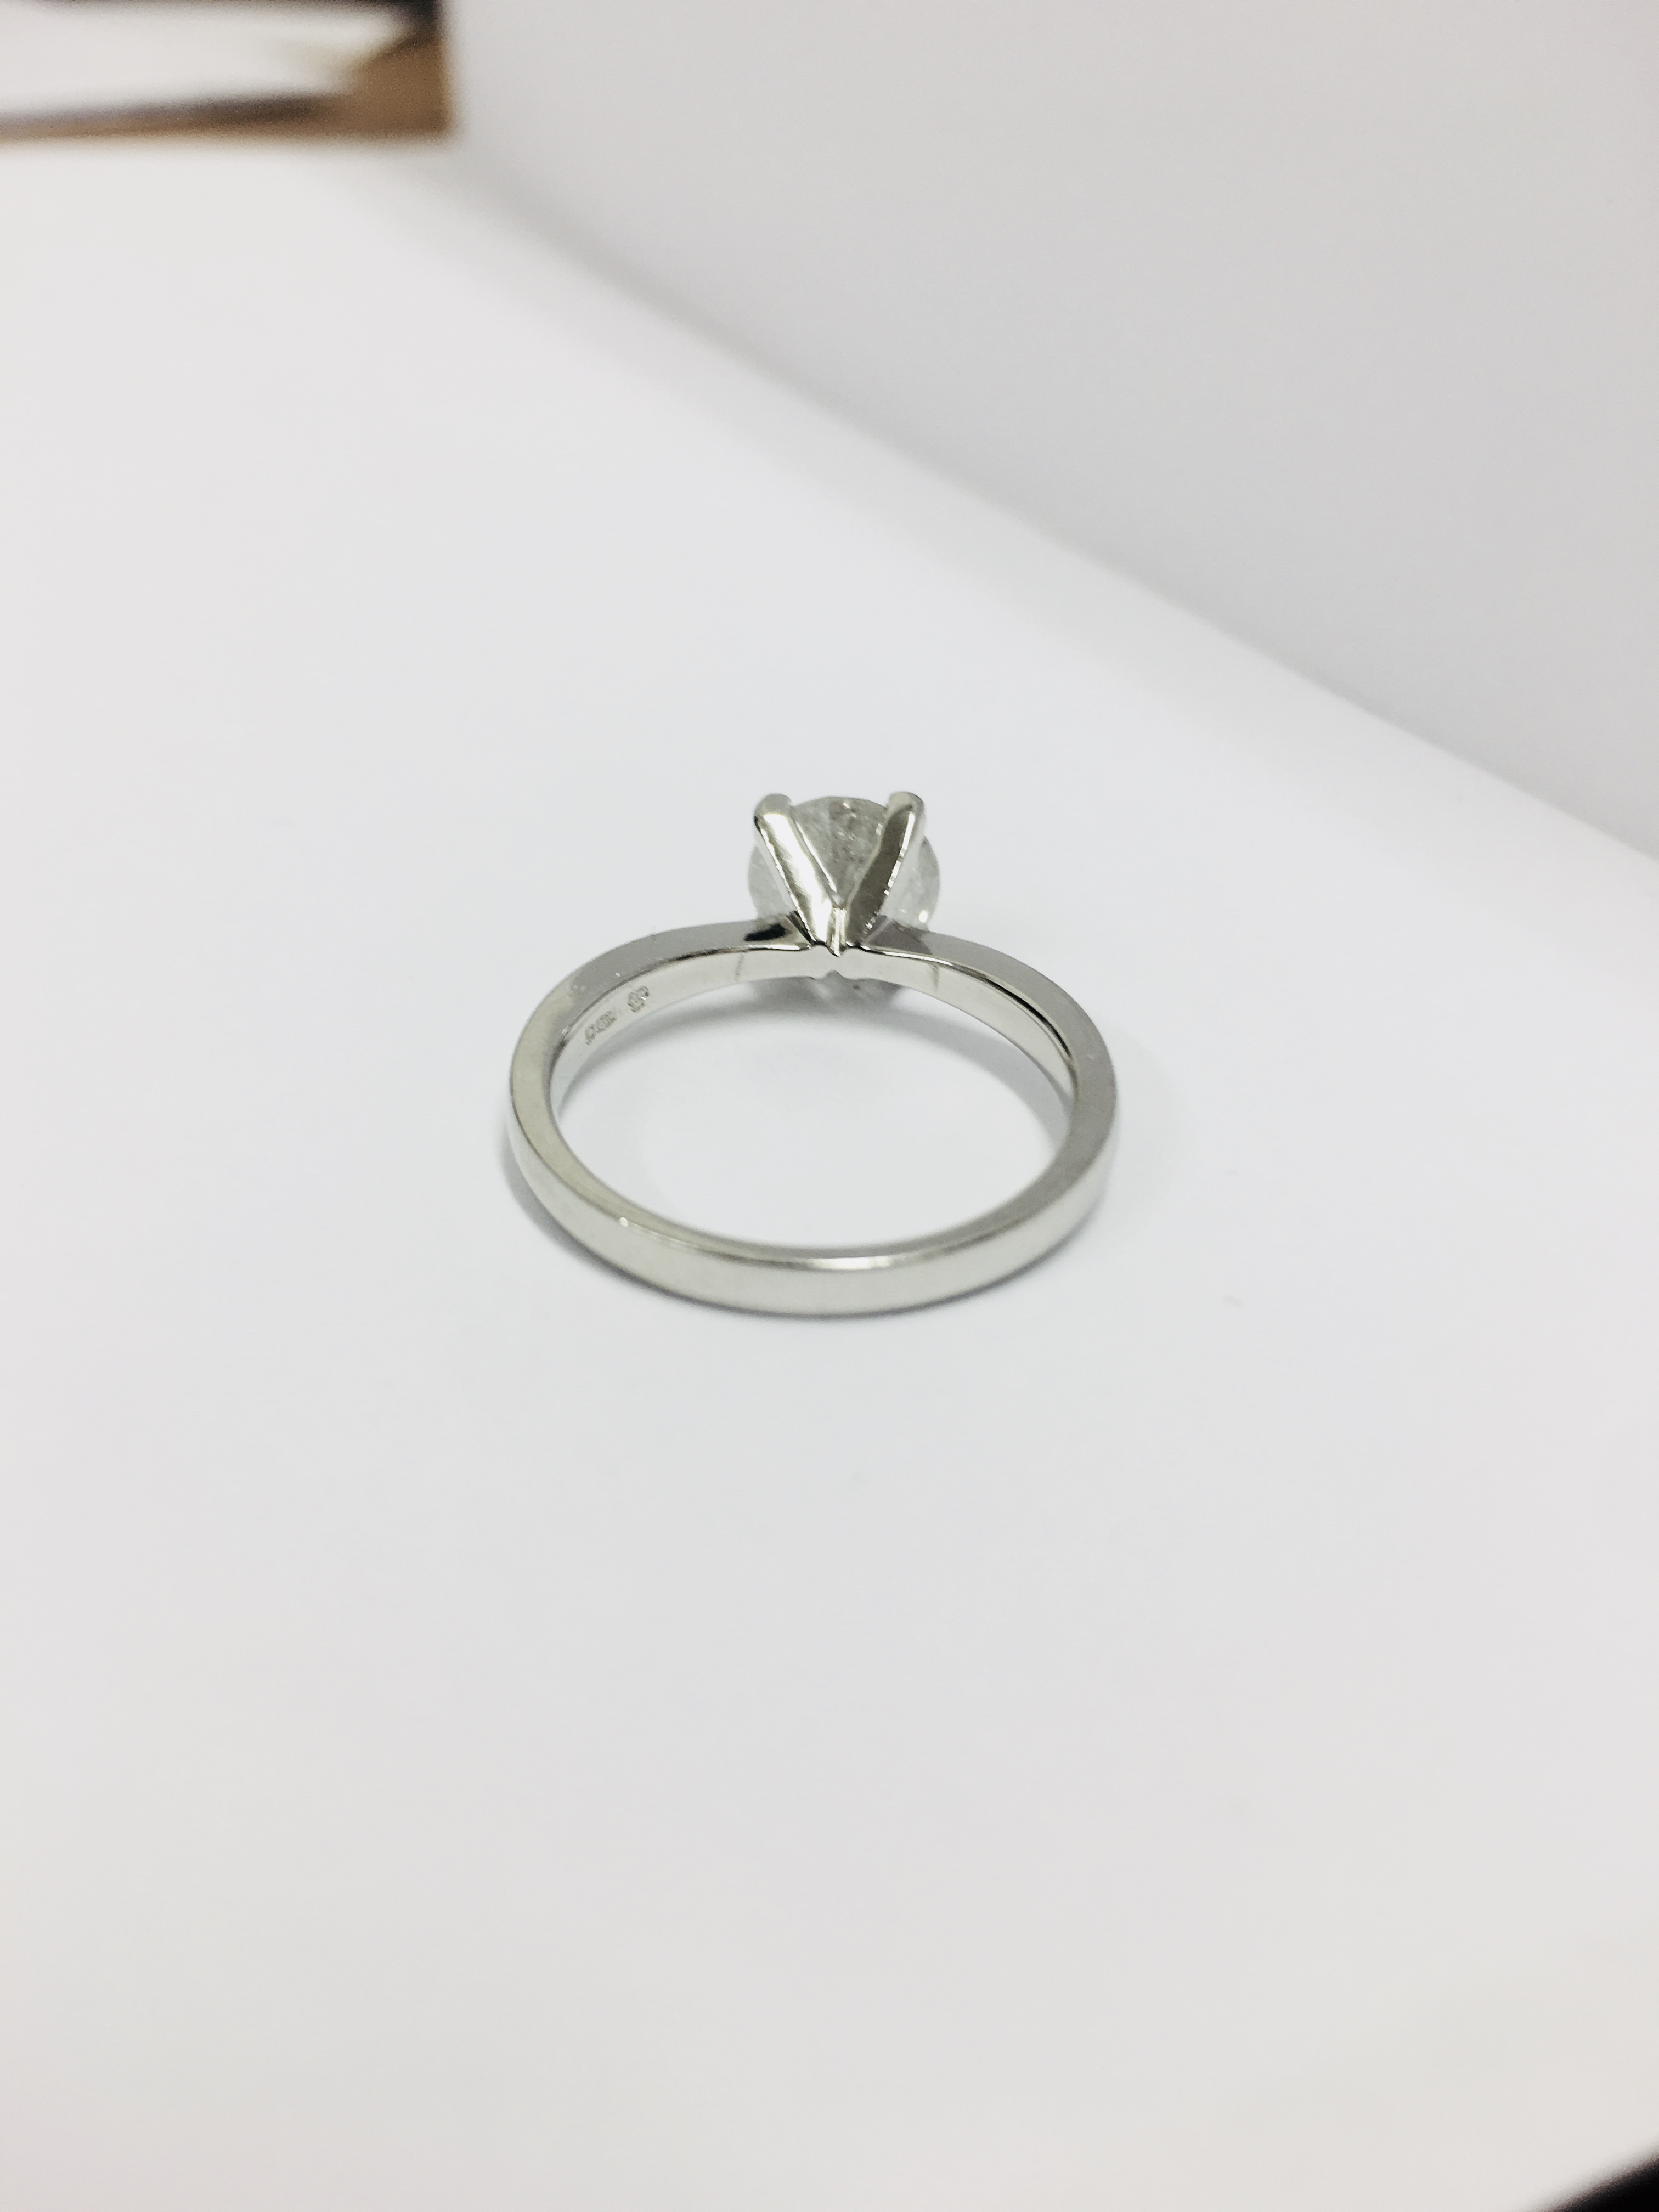 1.50ct diamond solitaire ring set in platinum - Image 17 of 35